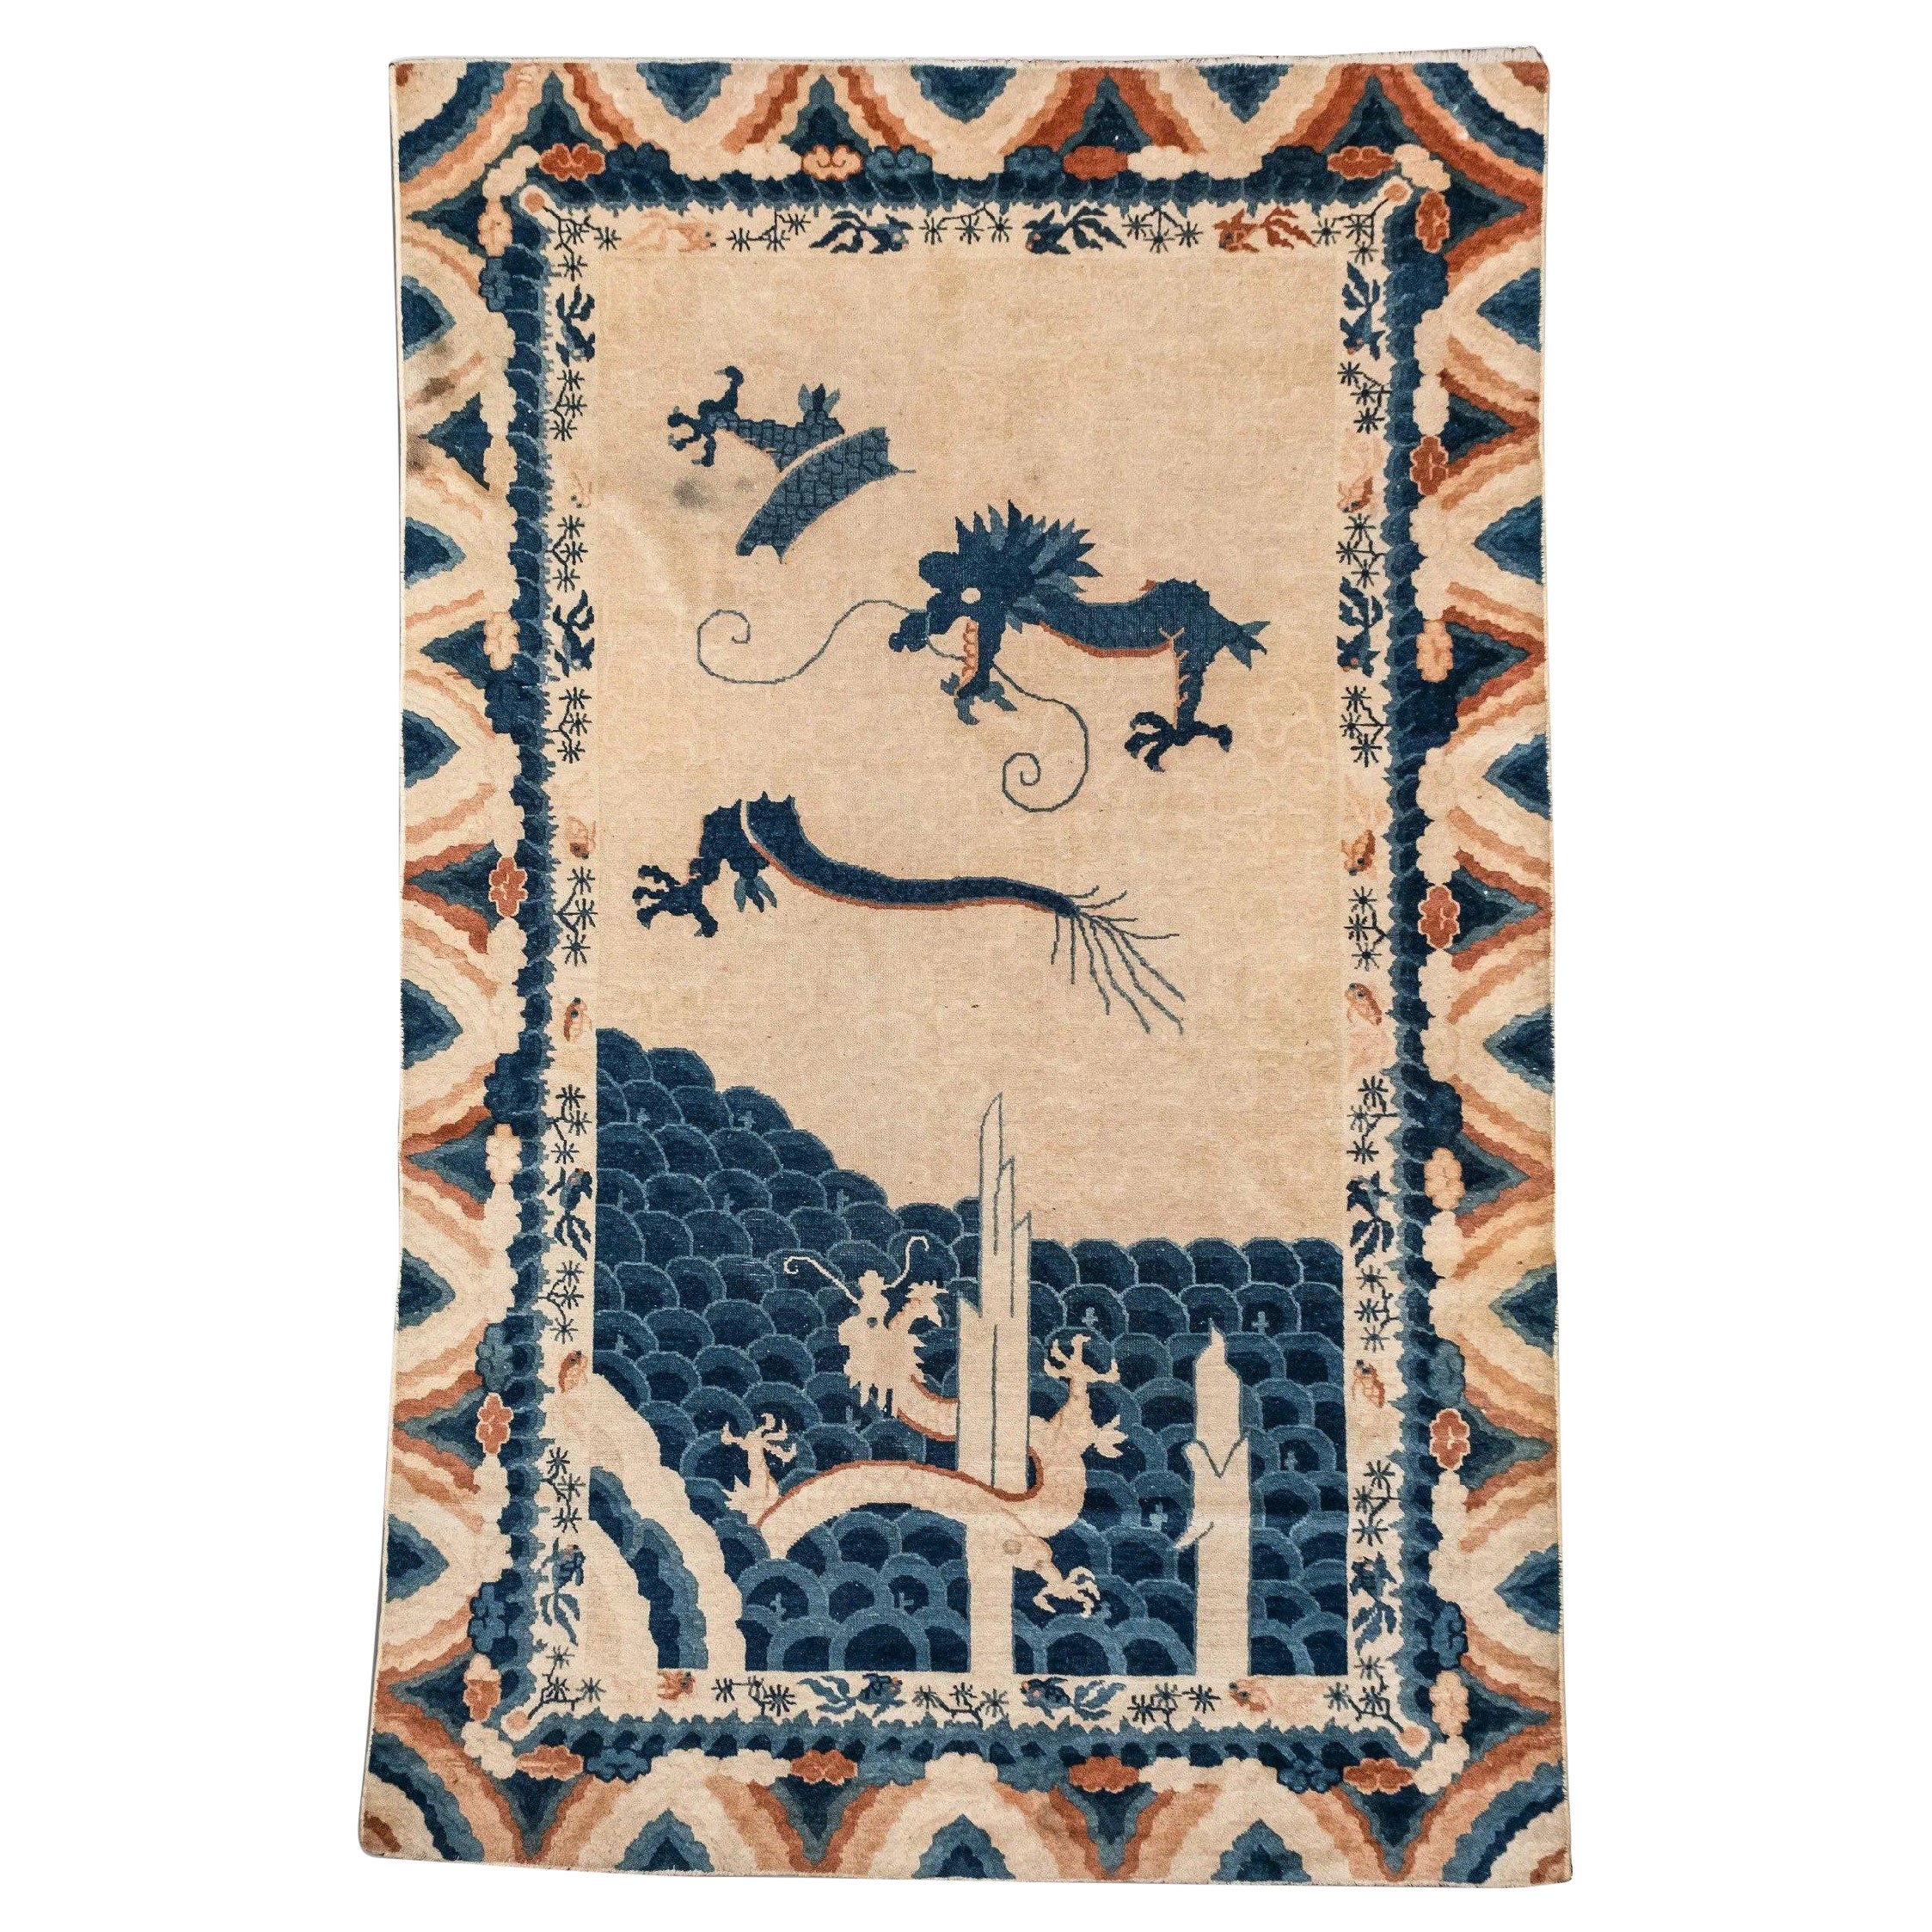 Chinesischer Pekinger Drachenteppich des späten 19. Jahrhunderts